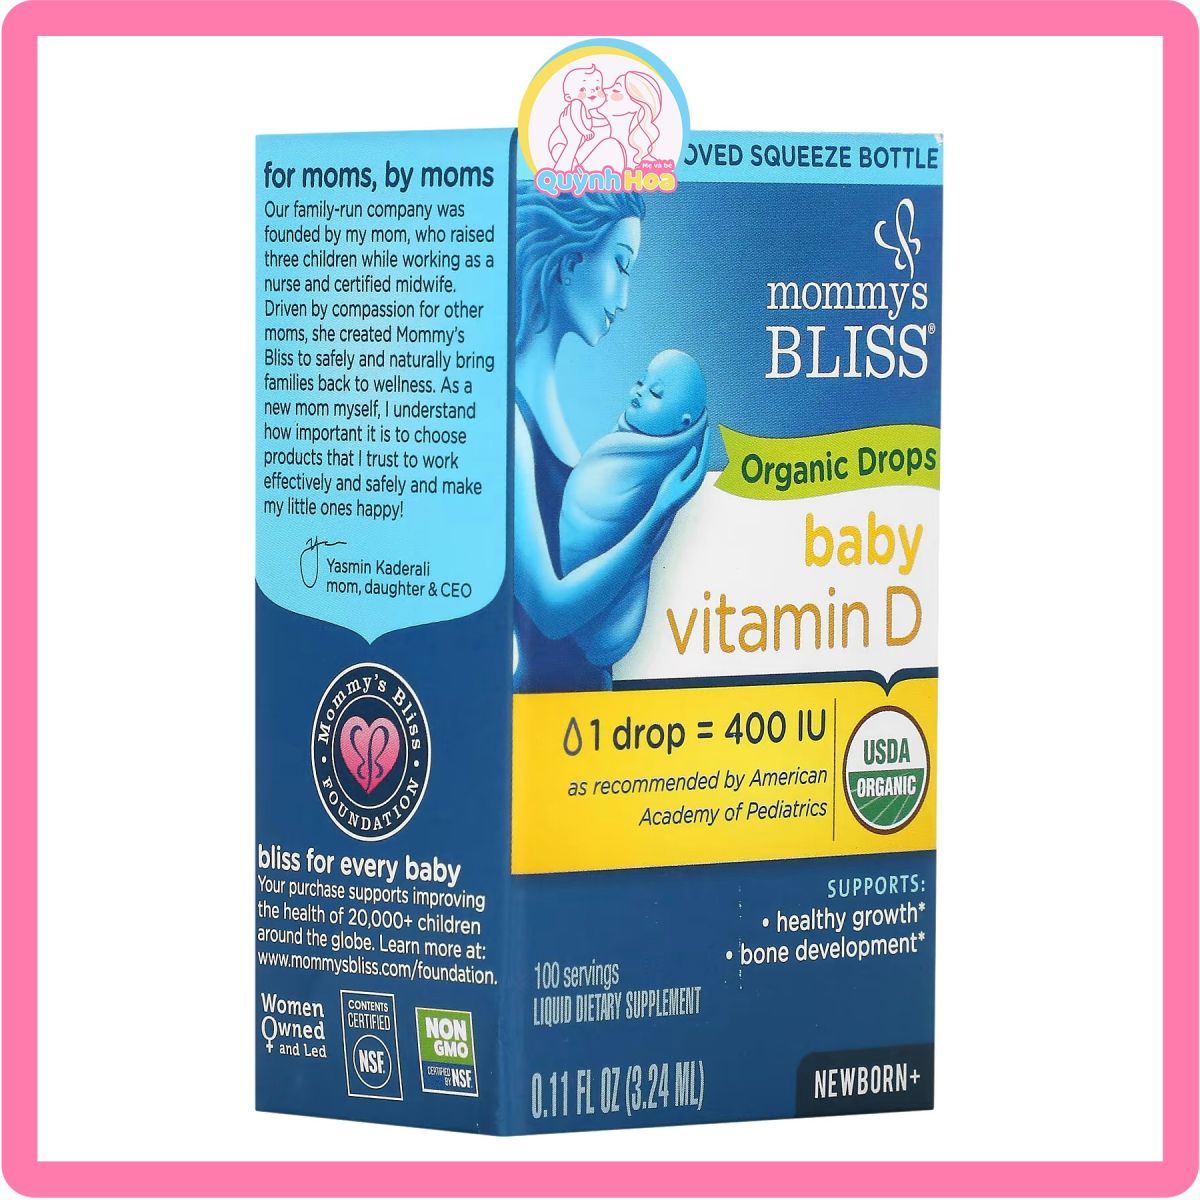 Vitamin D Organic Mommys Bliss, 3.24ml  thumb 1